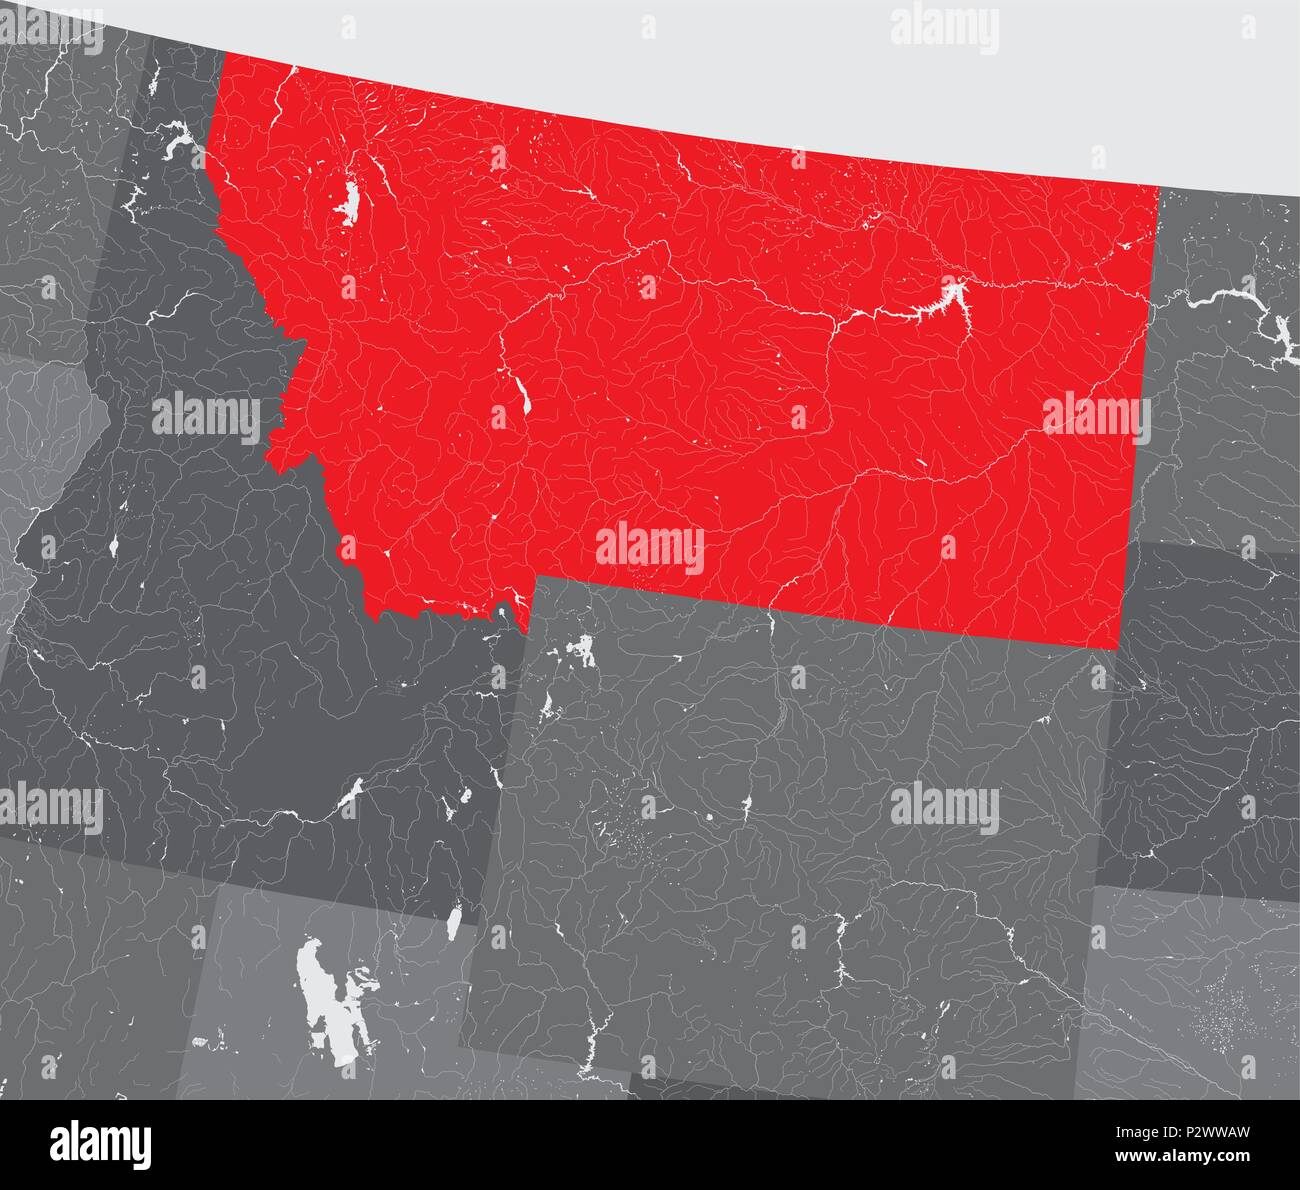 Der USA-Karte von Montana. Hand gemacht. Flüsse und Seen sind dargestellt. Bitte sehen Sie sich meine anderen Bilder von kartographischen Serie - sie sind alle sehr Detaile Stock Vektor